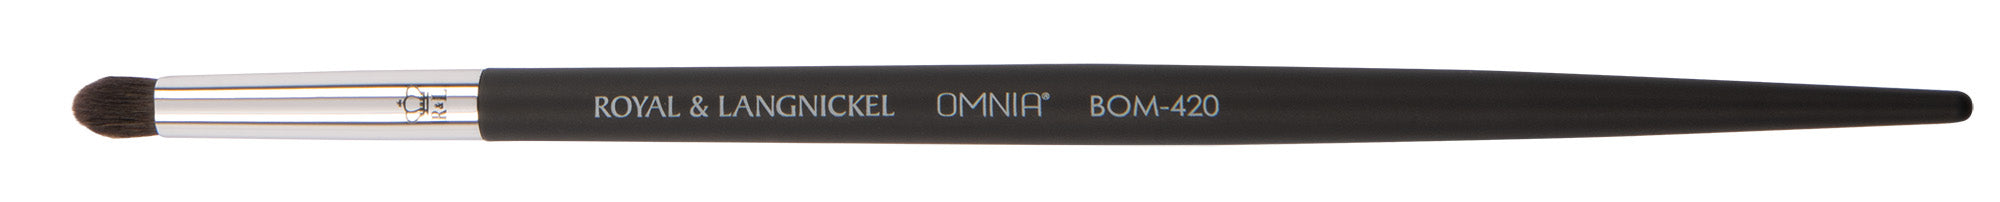 OMNIA® Professional BOM-420